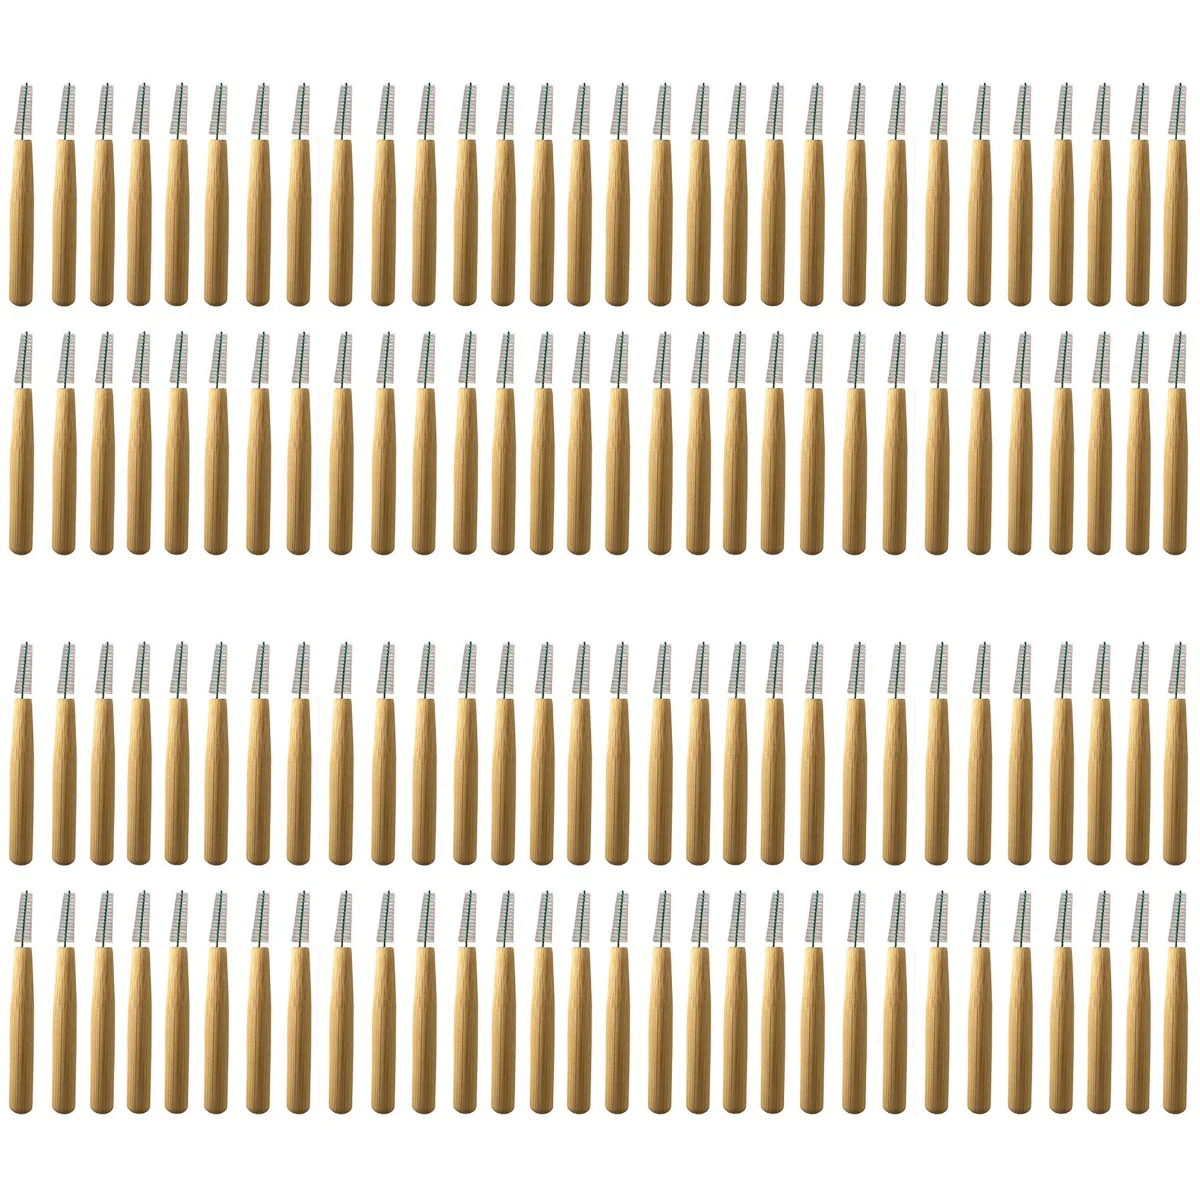 

200 межзубные щетки, чистящие инструменты, портативные чистящие зубочистки, флоссы